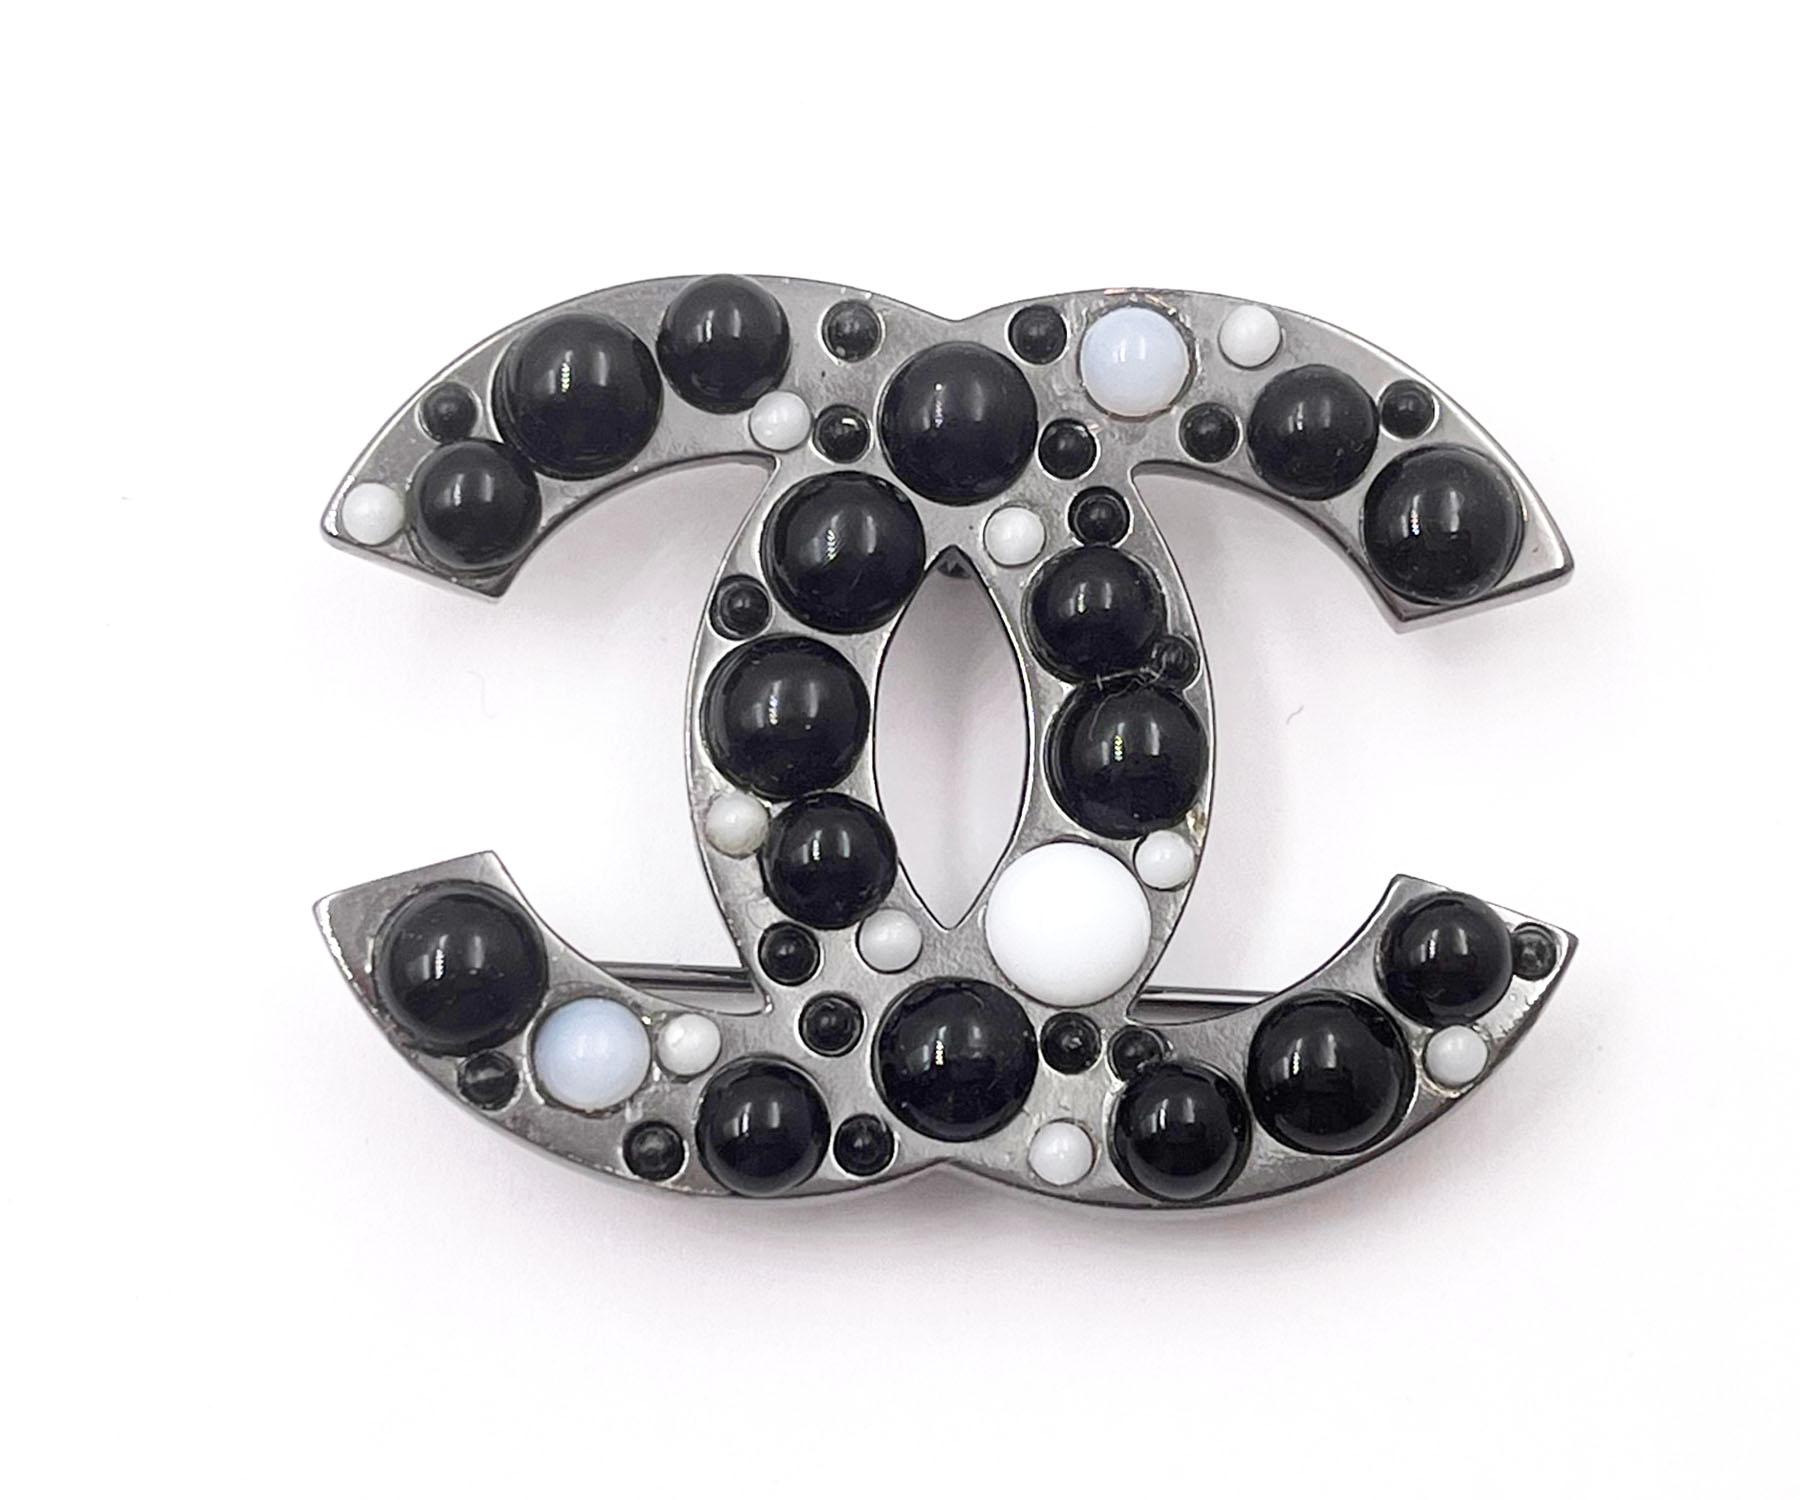 Chanel Gunmetal CC Schwarz-Weiß-Perlenbrosche

* Markiert 03
* Hergestellt in Frankreich

-Sie ist ungefähr 1,9